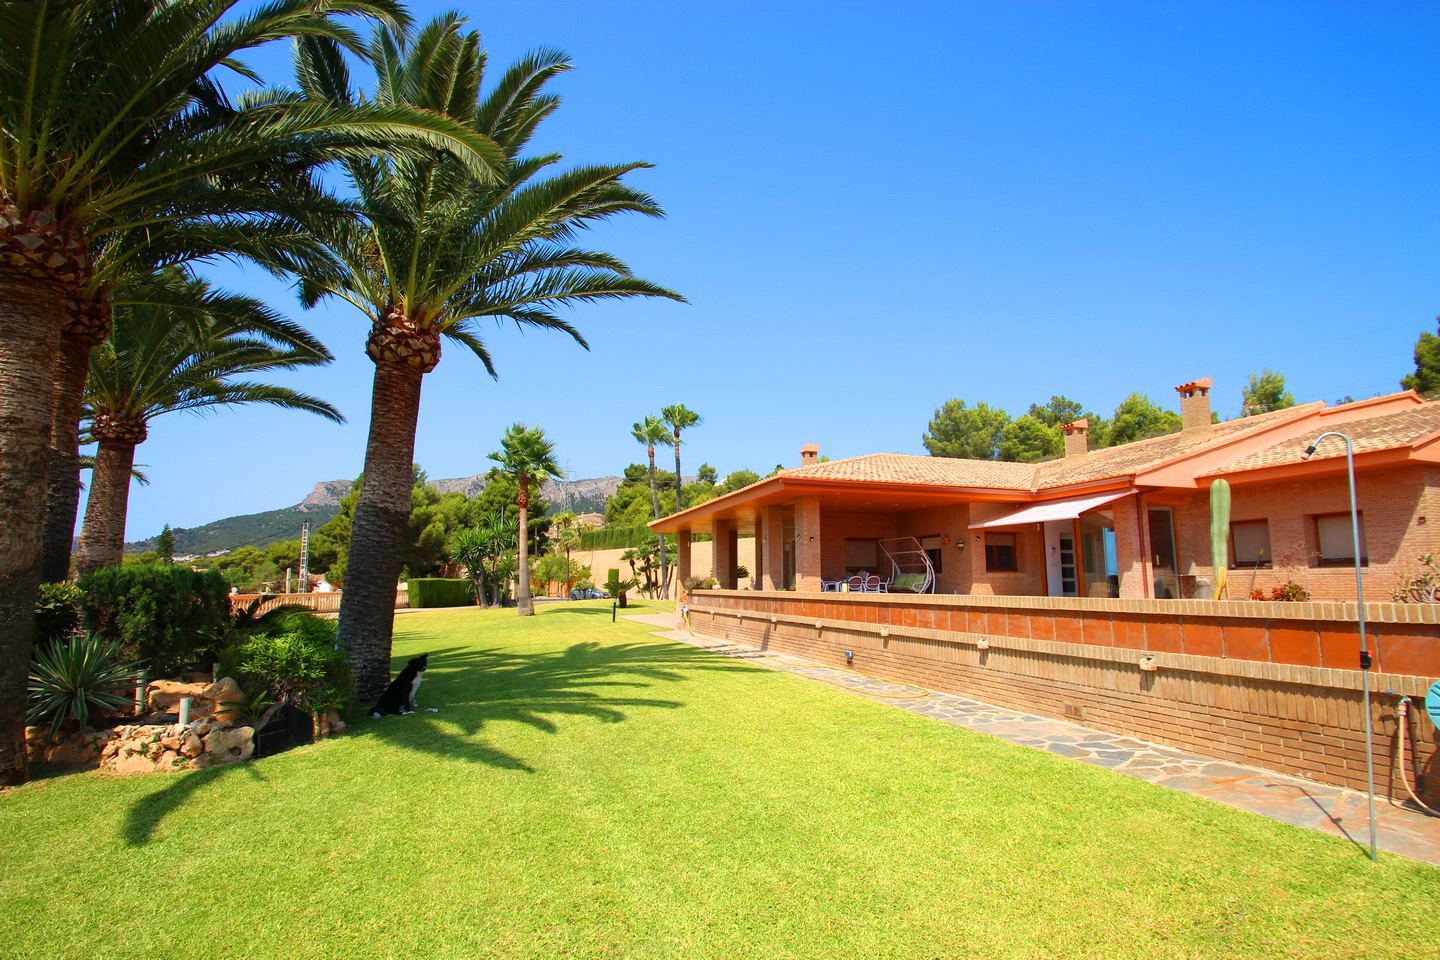 Villa de luxe située à Calpe, avec 5 chambres, 5 salles de bains, 12 000 m2 de terrain avec jardin et piscine intérieure.